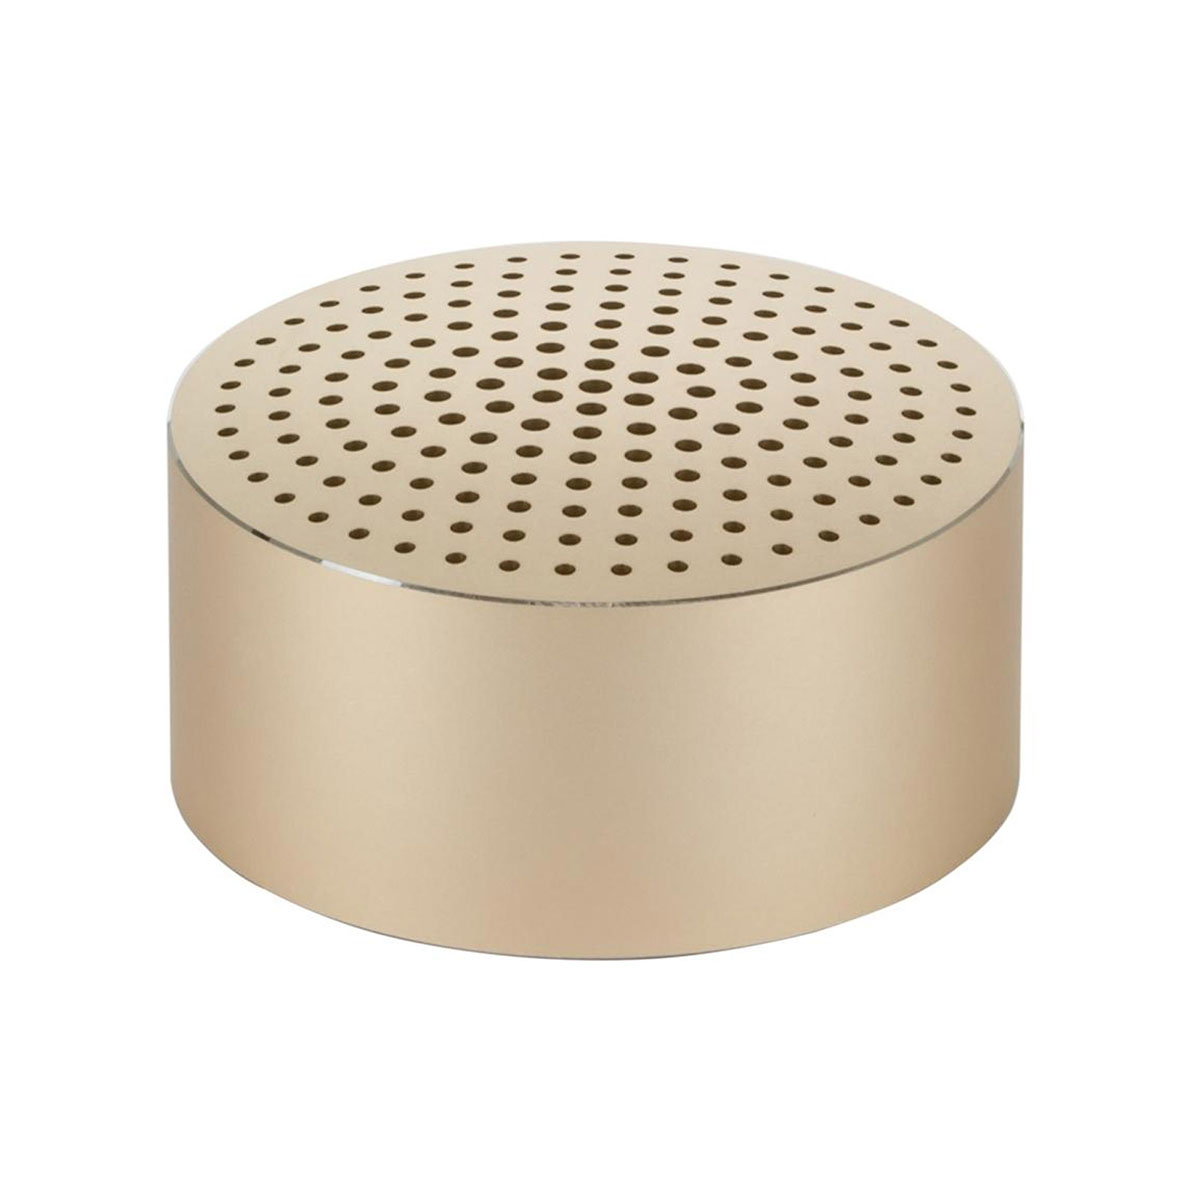 Портативная акустическая аудио колонка XIAOMI Mi Bluetooth Speaker Mini, цвет золотистый.